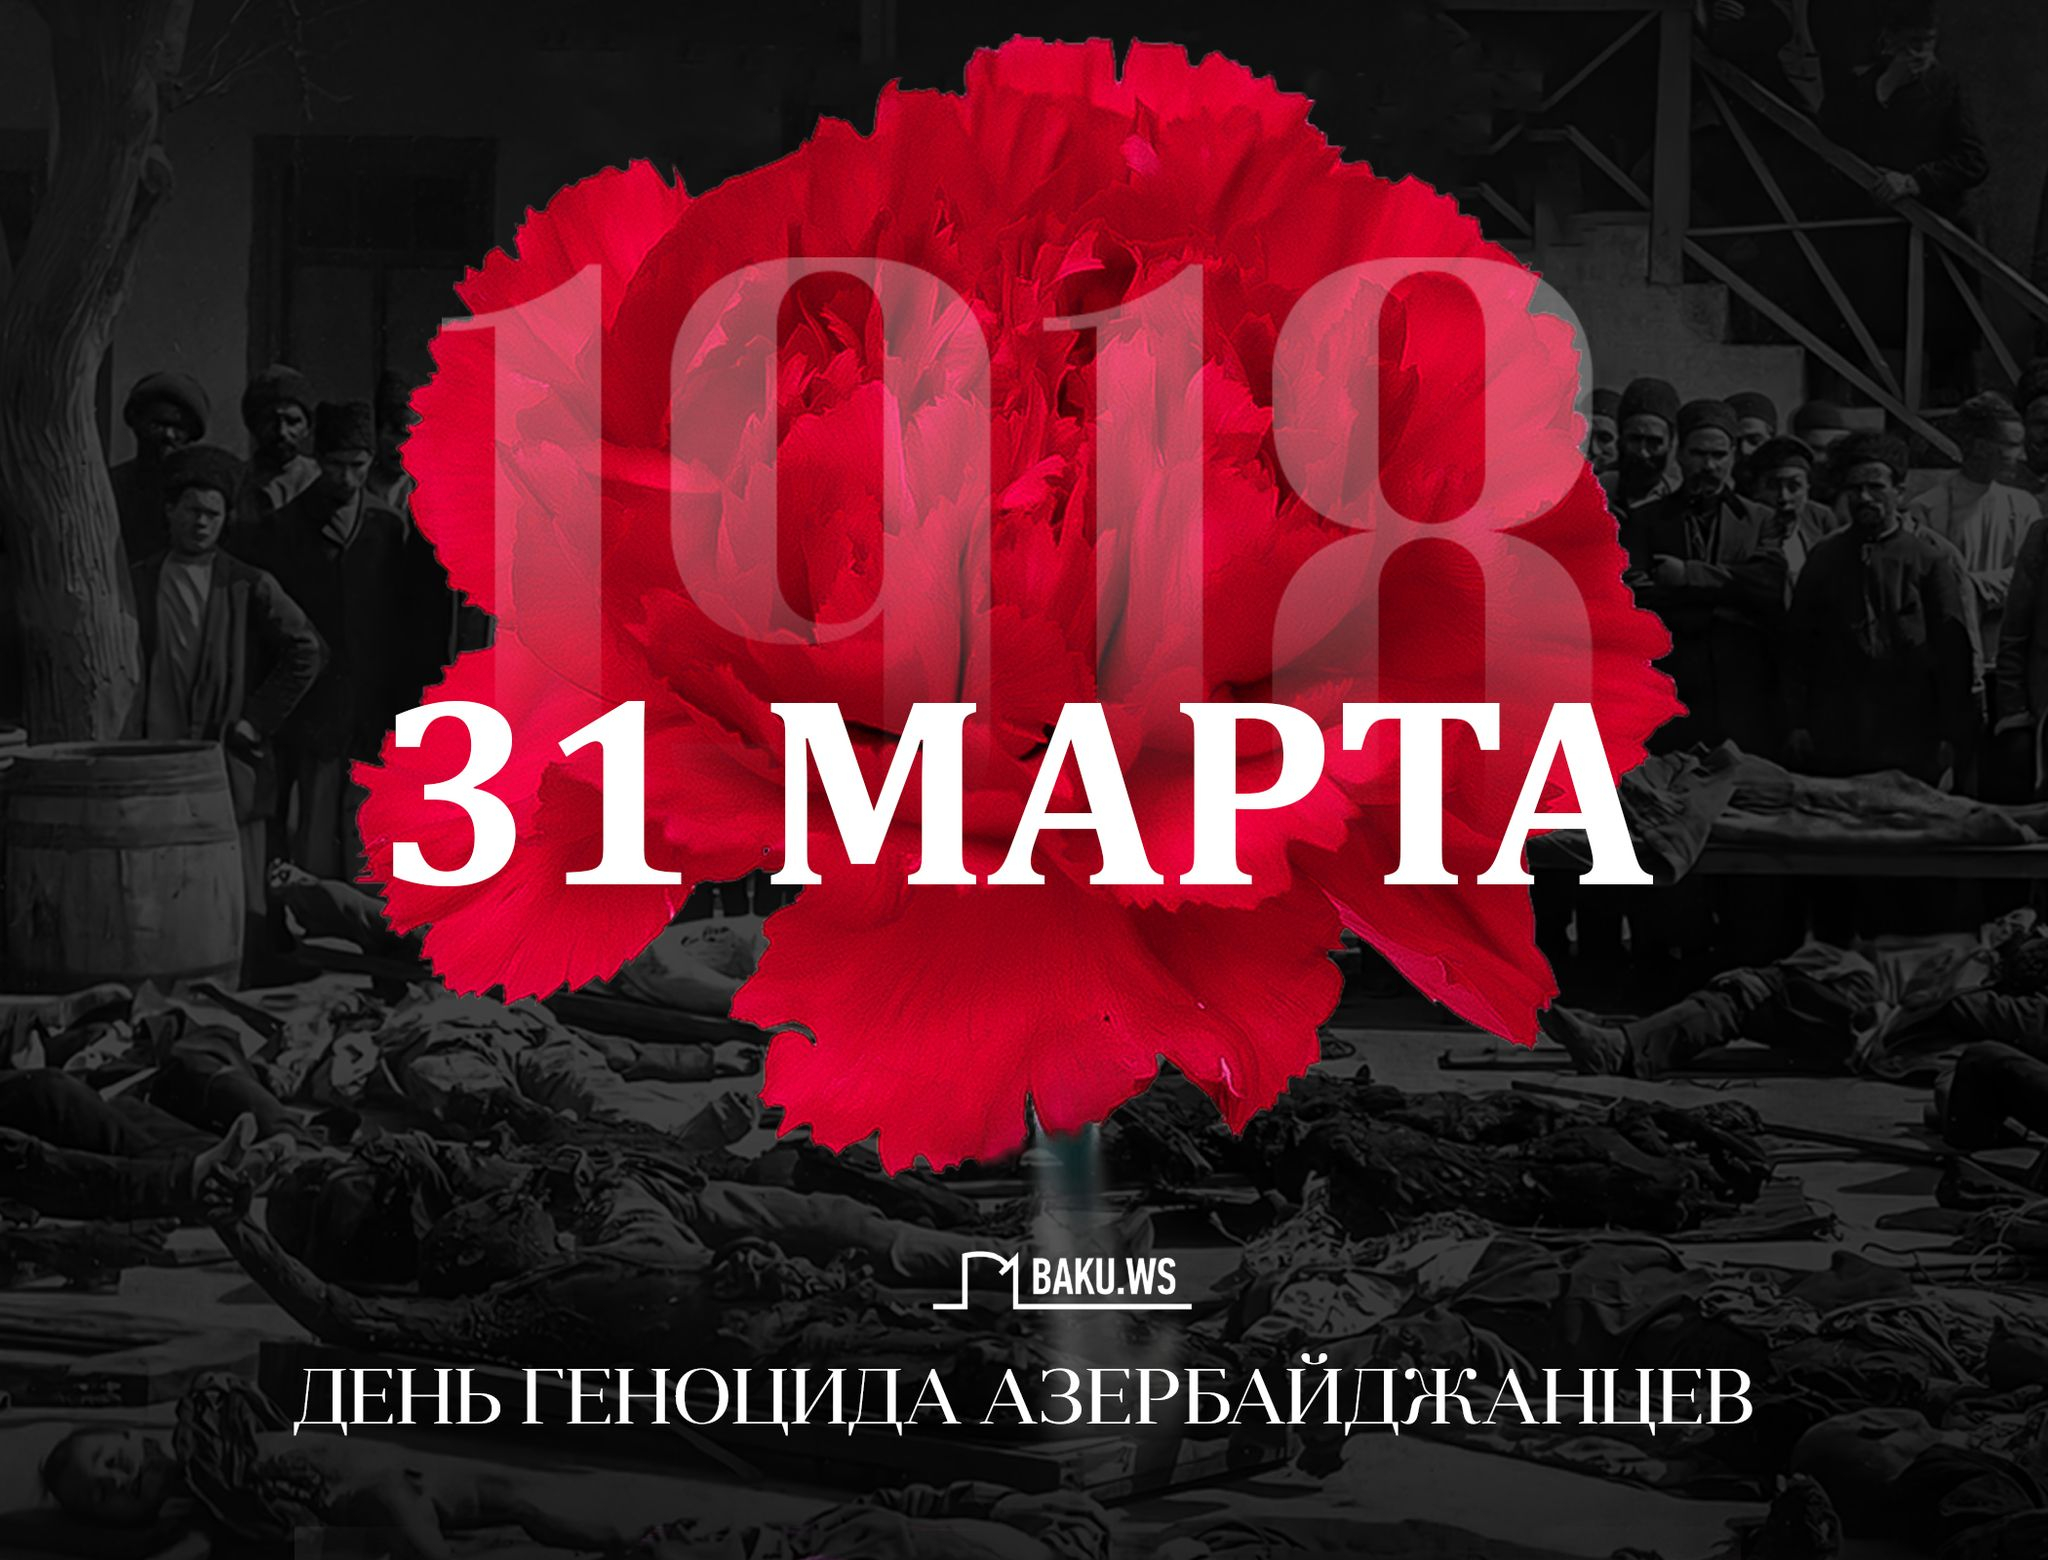 Минуло 105 лет со дня геноцида, учиненного армянами против азербайджанского народа